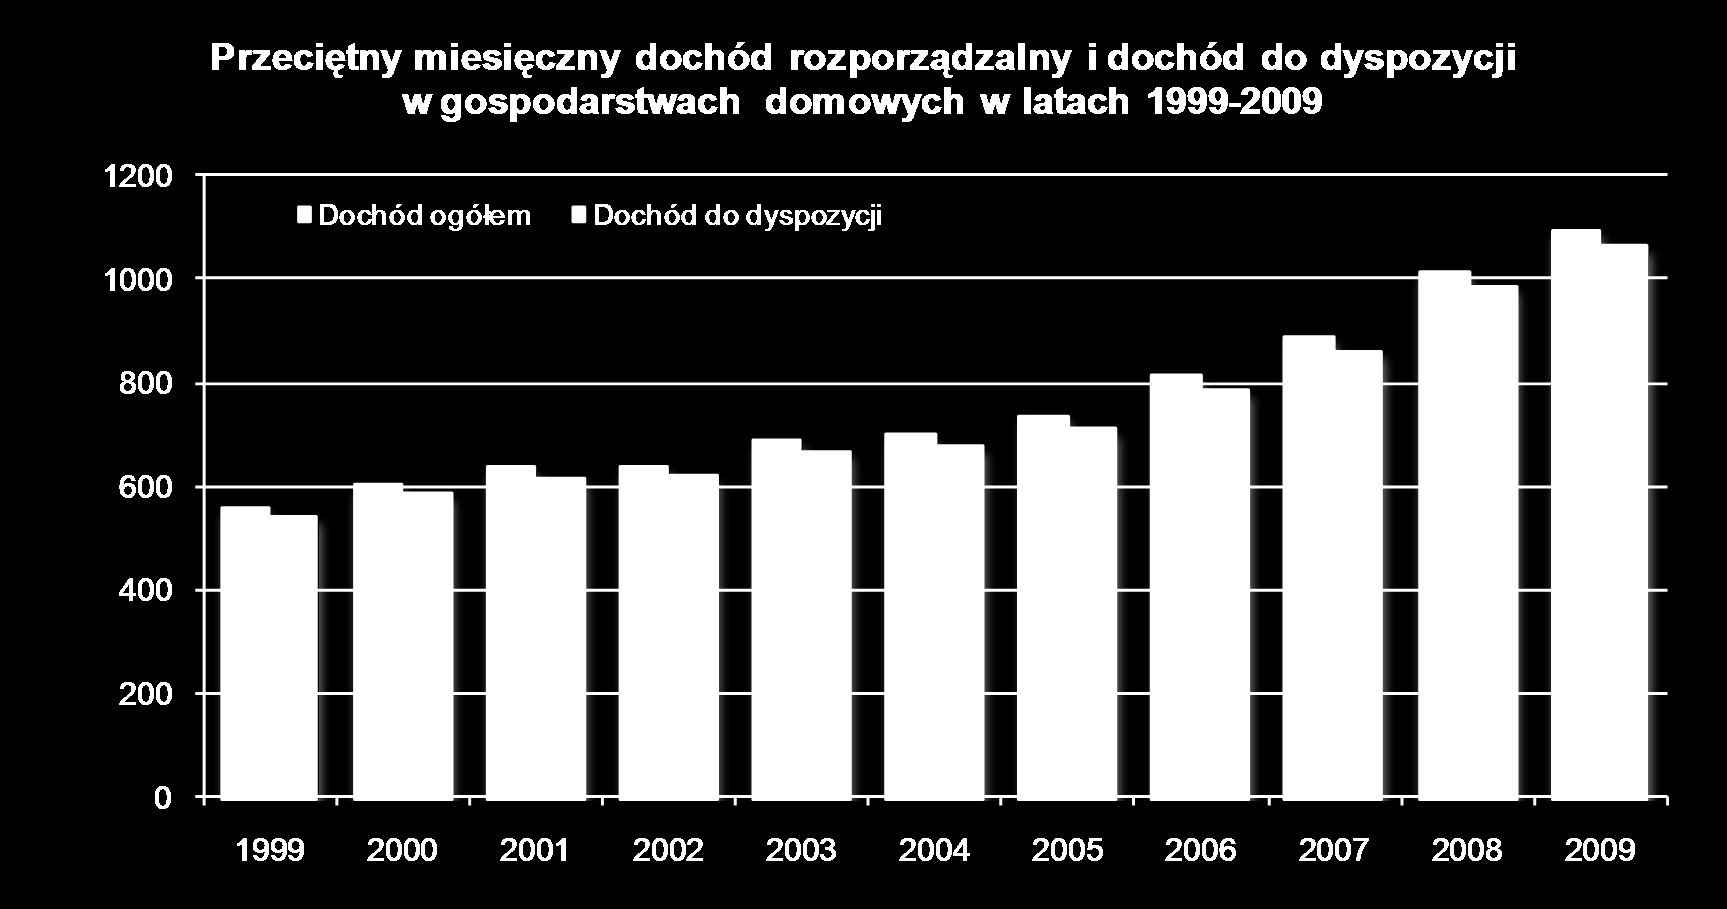 GOSPODARSTWA DOMOWE Przeciętna liczba osób w gospodarstwie domowym w Wielkopolsce w latach 1999-2009 3,45 3,40 3,35 3,30 3,25 3,20